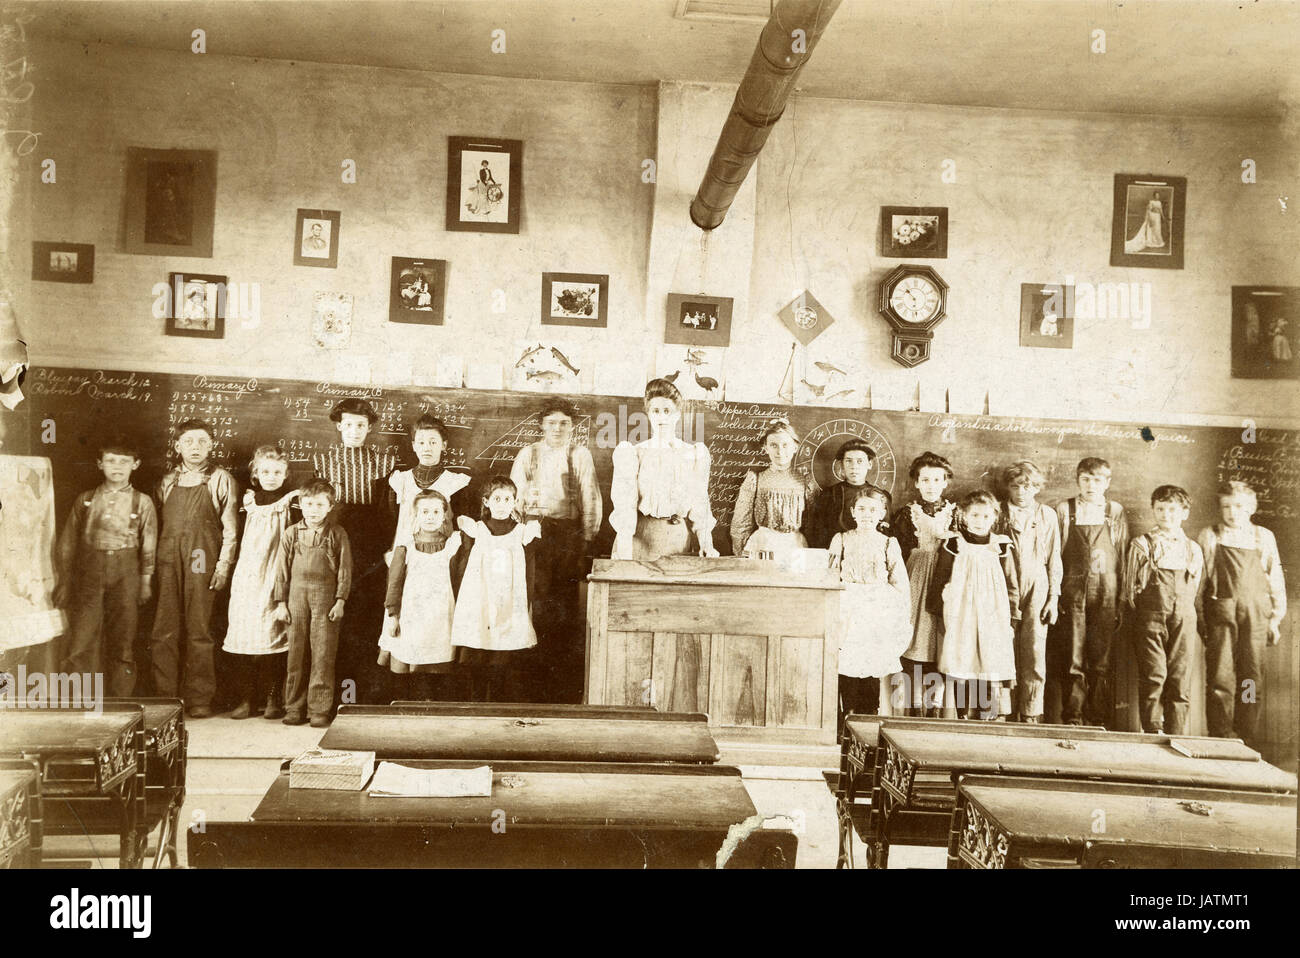 Antike c1890 Foto, Landschule mit Lehrer und Schüler. Lage unbekannt, möglicherweise Minnesota. QUELLE: ZWEITE GENERATION ORIGINALFOTO. Stockfoto